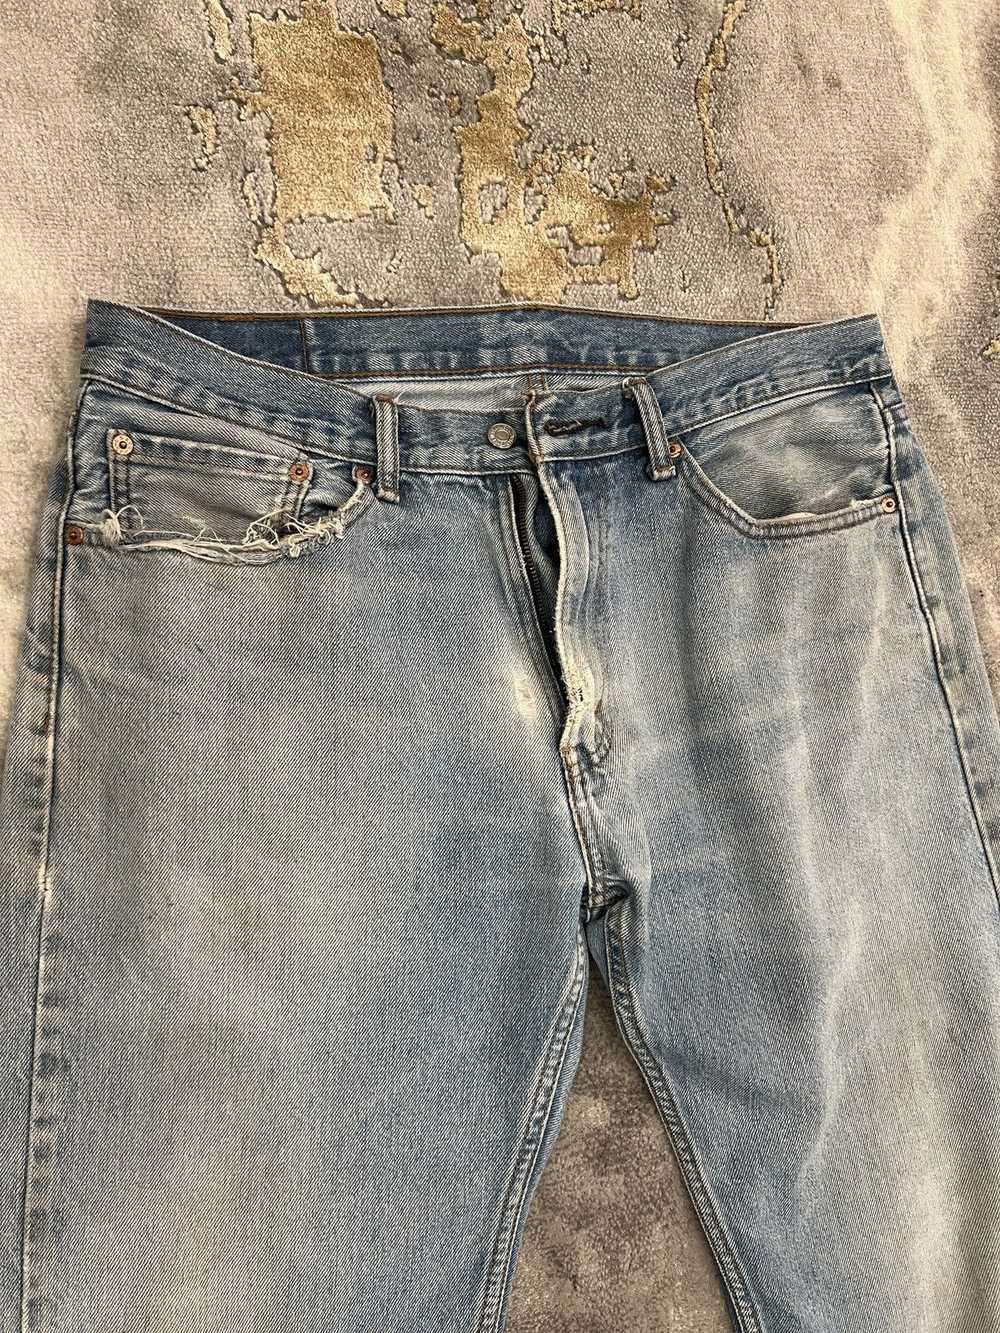 Levi's × Vintage Vintage Levi’s Jeans 505 34 x 34 - image 2